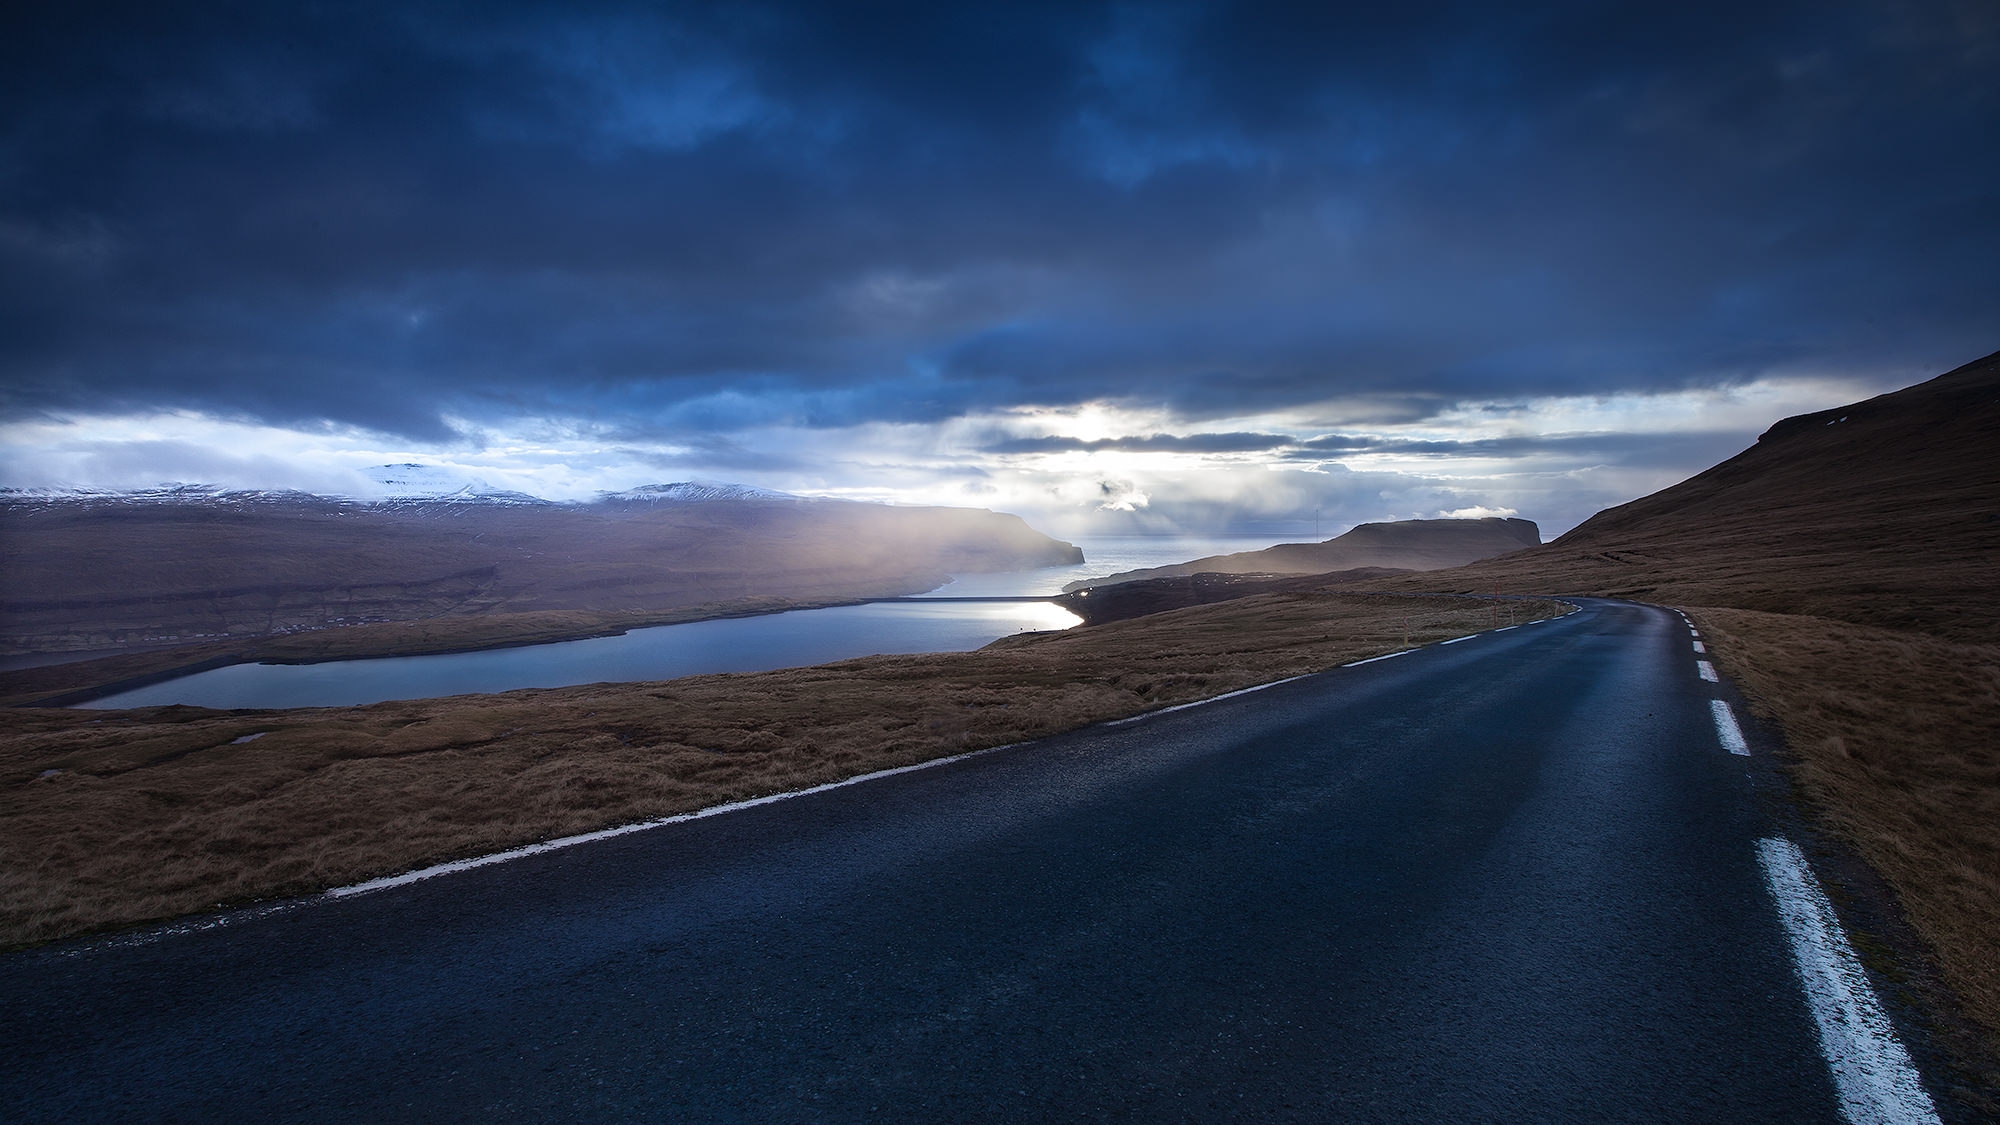 Faroe Islands, Clouds, Mountains, Faroes, Road, Highway, - Faroe Islands Night , HD Wallpaper & Backgrounds